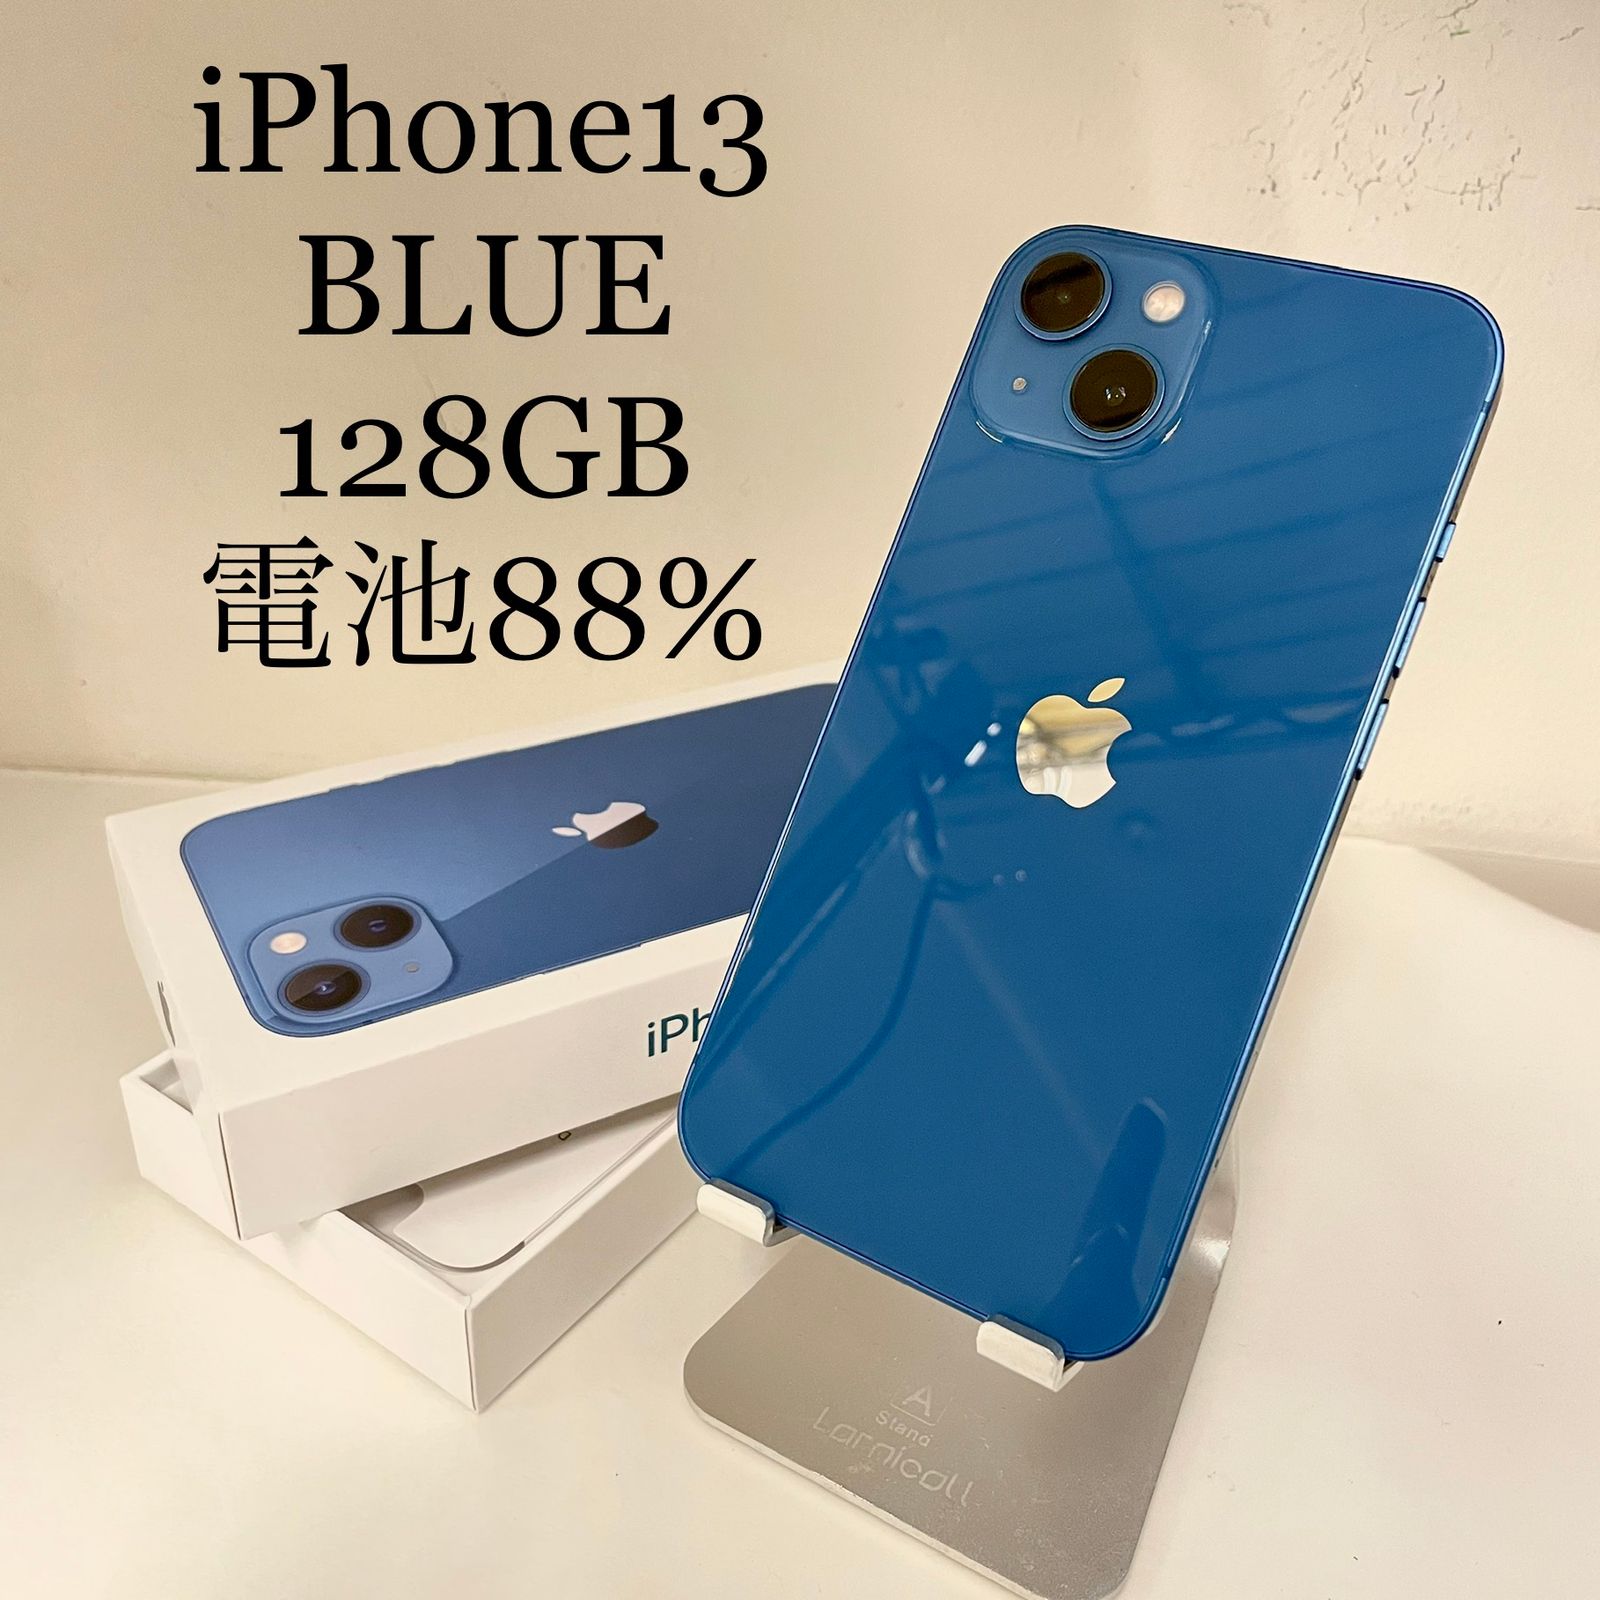 iPhone13 ブルー 128GB 電池残量88% - メルカリ